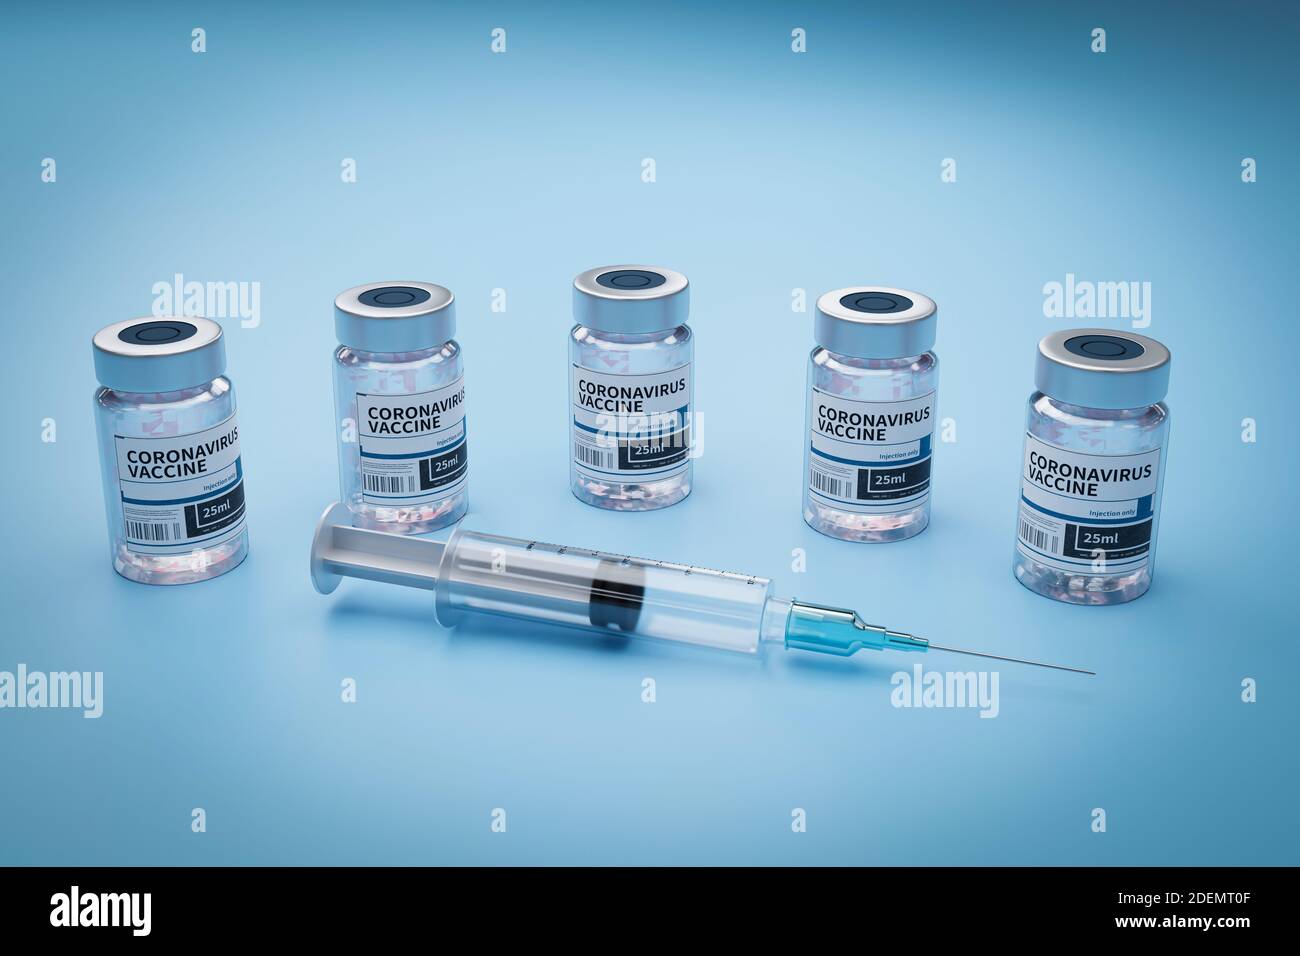 Ampoules avec le vaccin Covid-19 sur un banc de laboratoire. Pour combattre le coronavirus. rendu 3d Banque D'Images